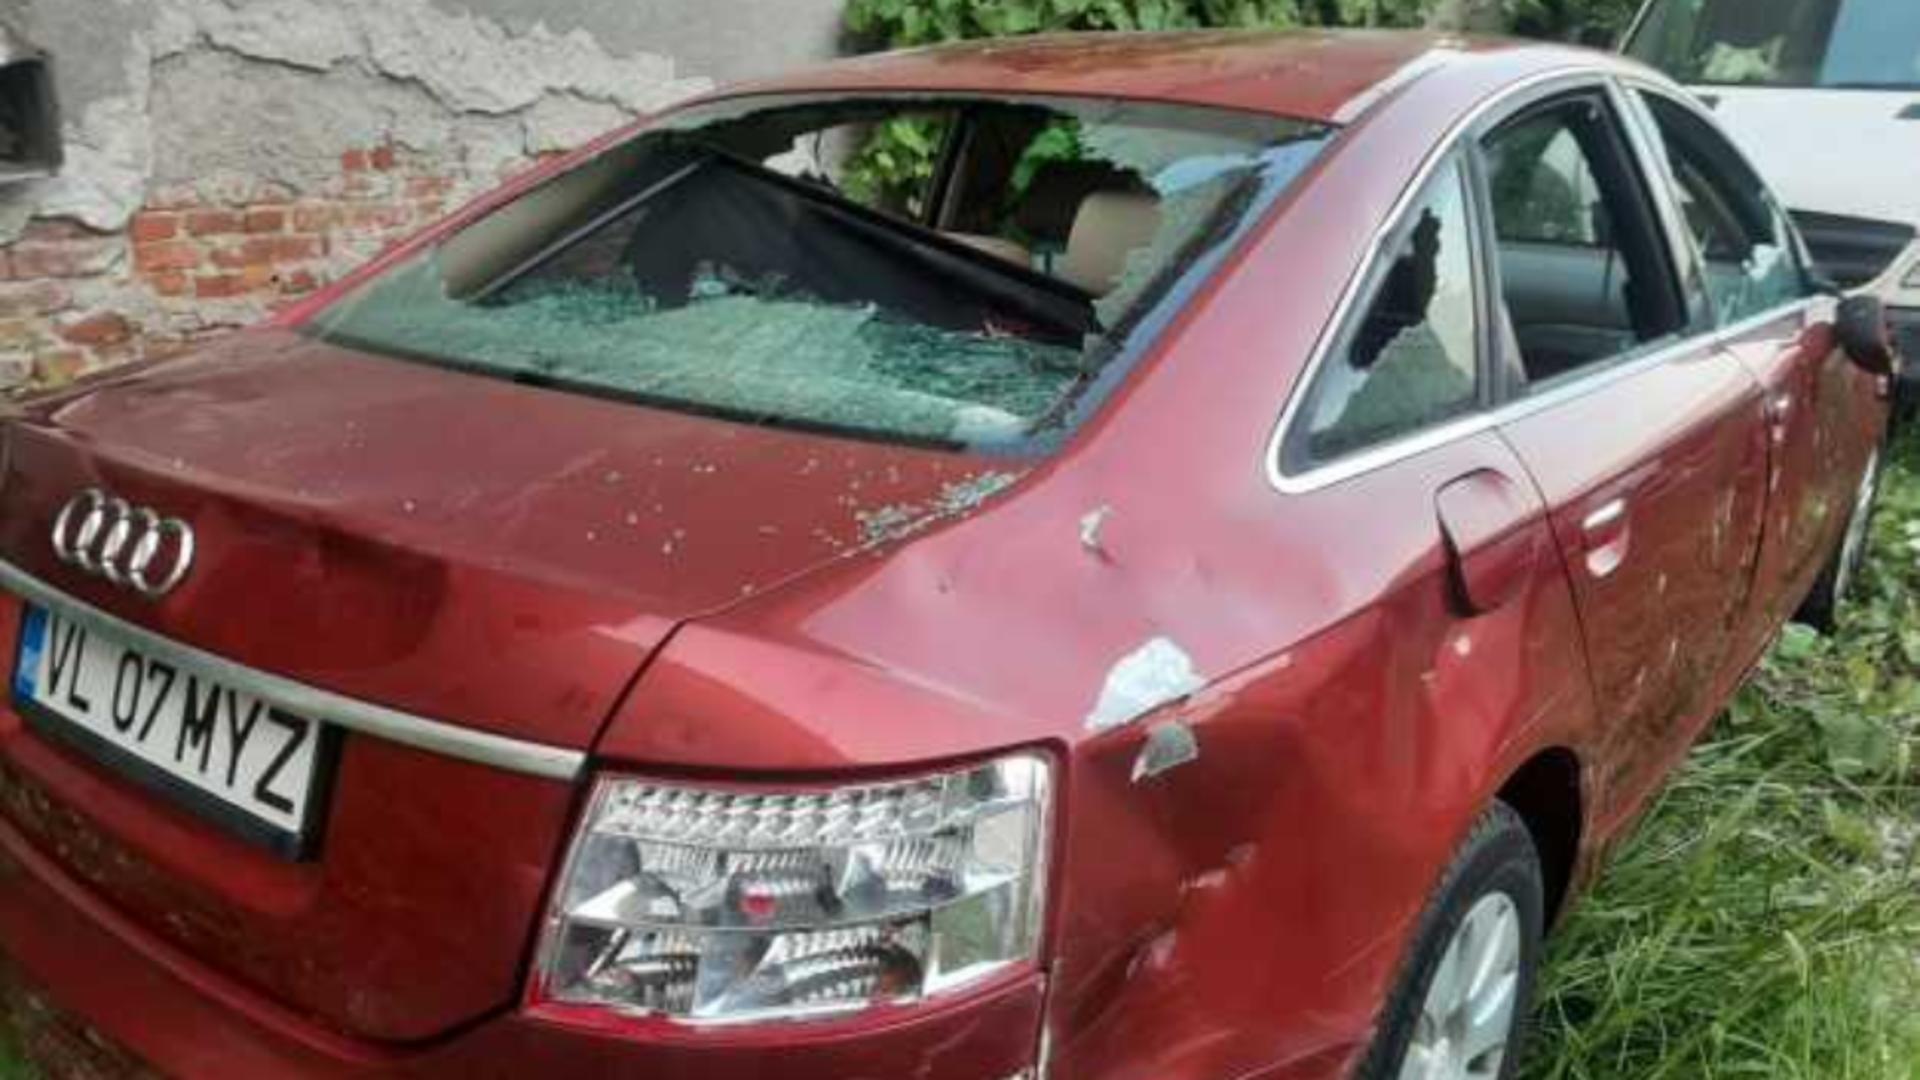 Imagini șocante, în Râmnicu Vâlcea: un bărbat distruge o mașină cu un topor. Foto: Facebook